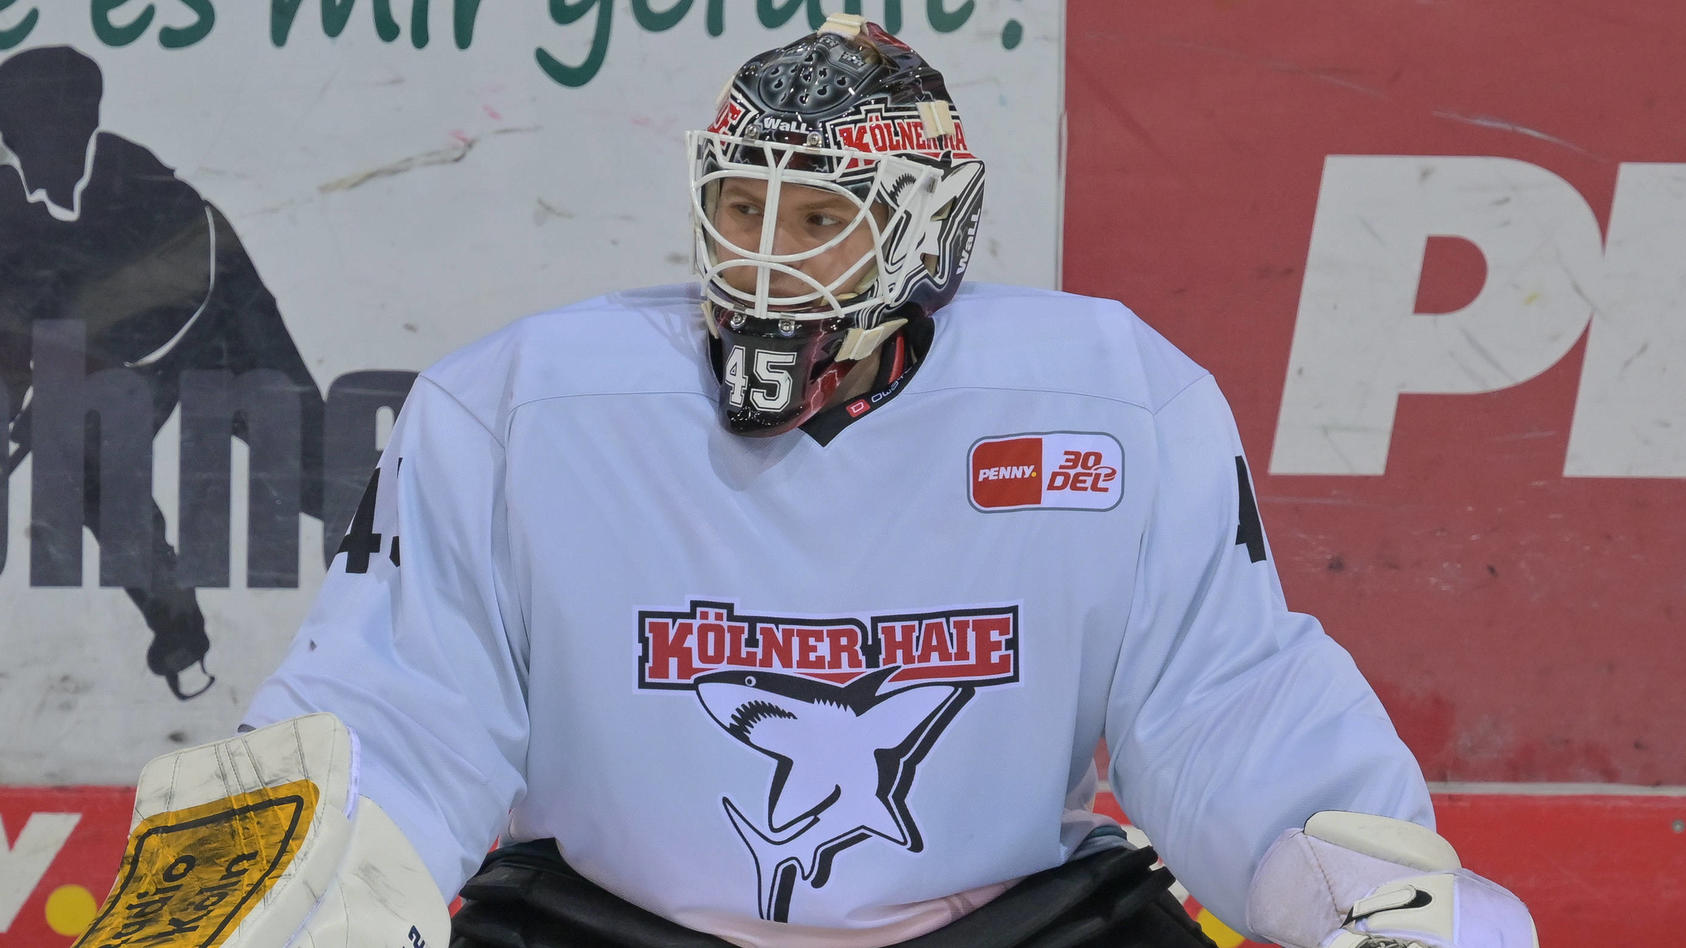 Kuriose Fahndung der Kölner Haie Eishockey-Club sucht eine Torwart-Maske